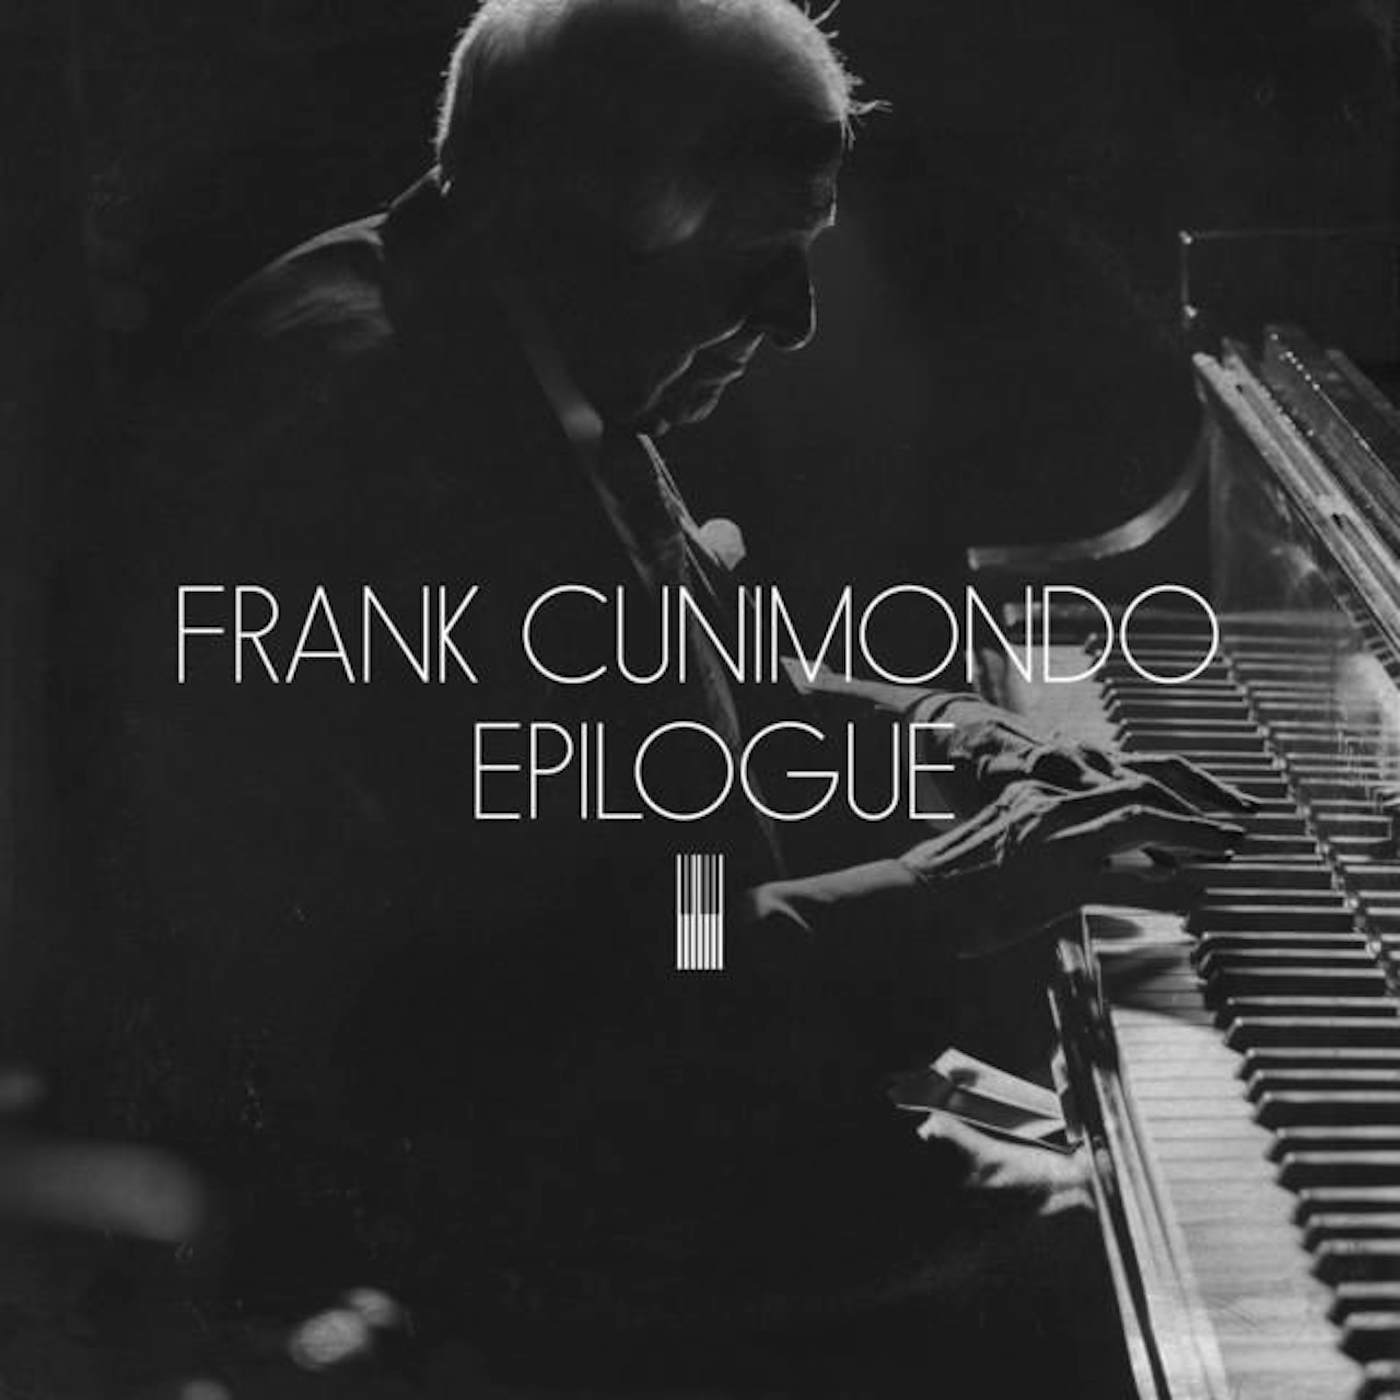 Frank Cunimondo